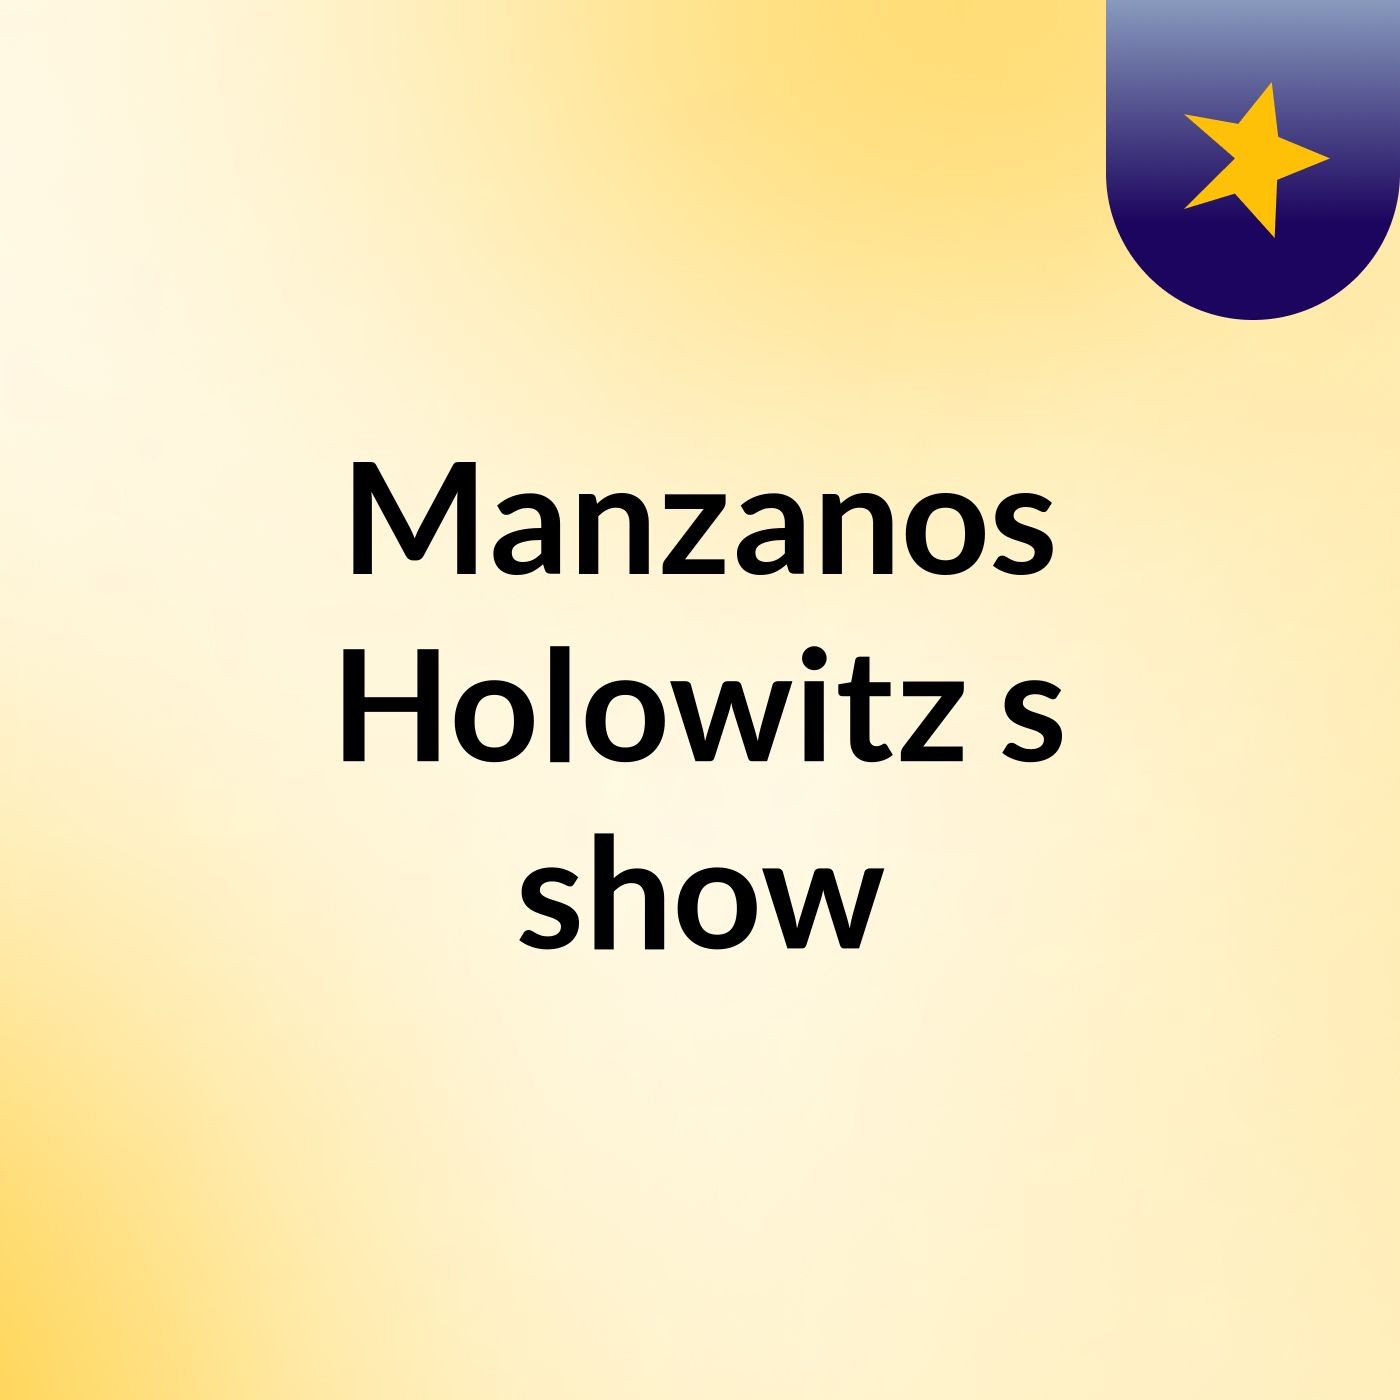 Manzanos Holowitz's show